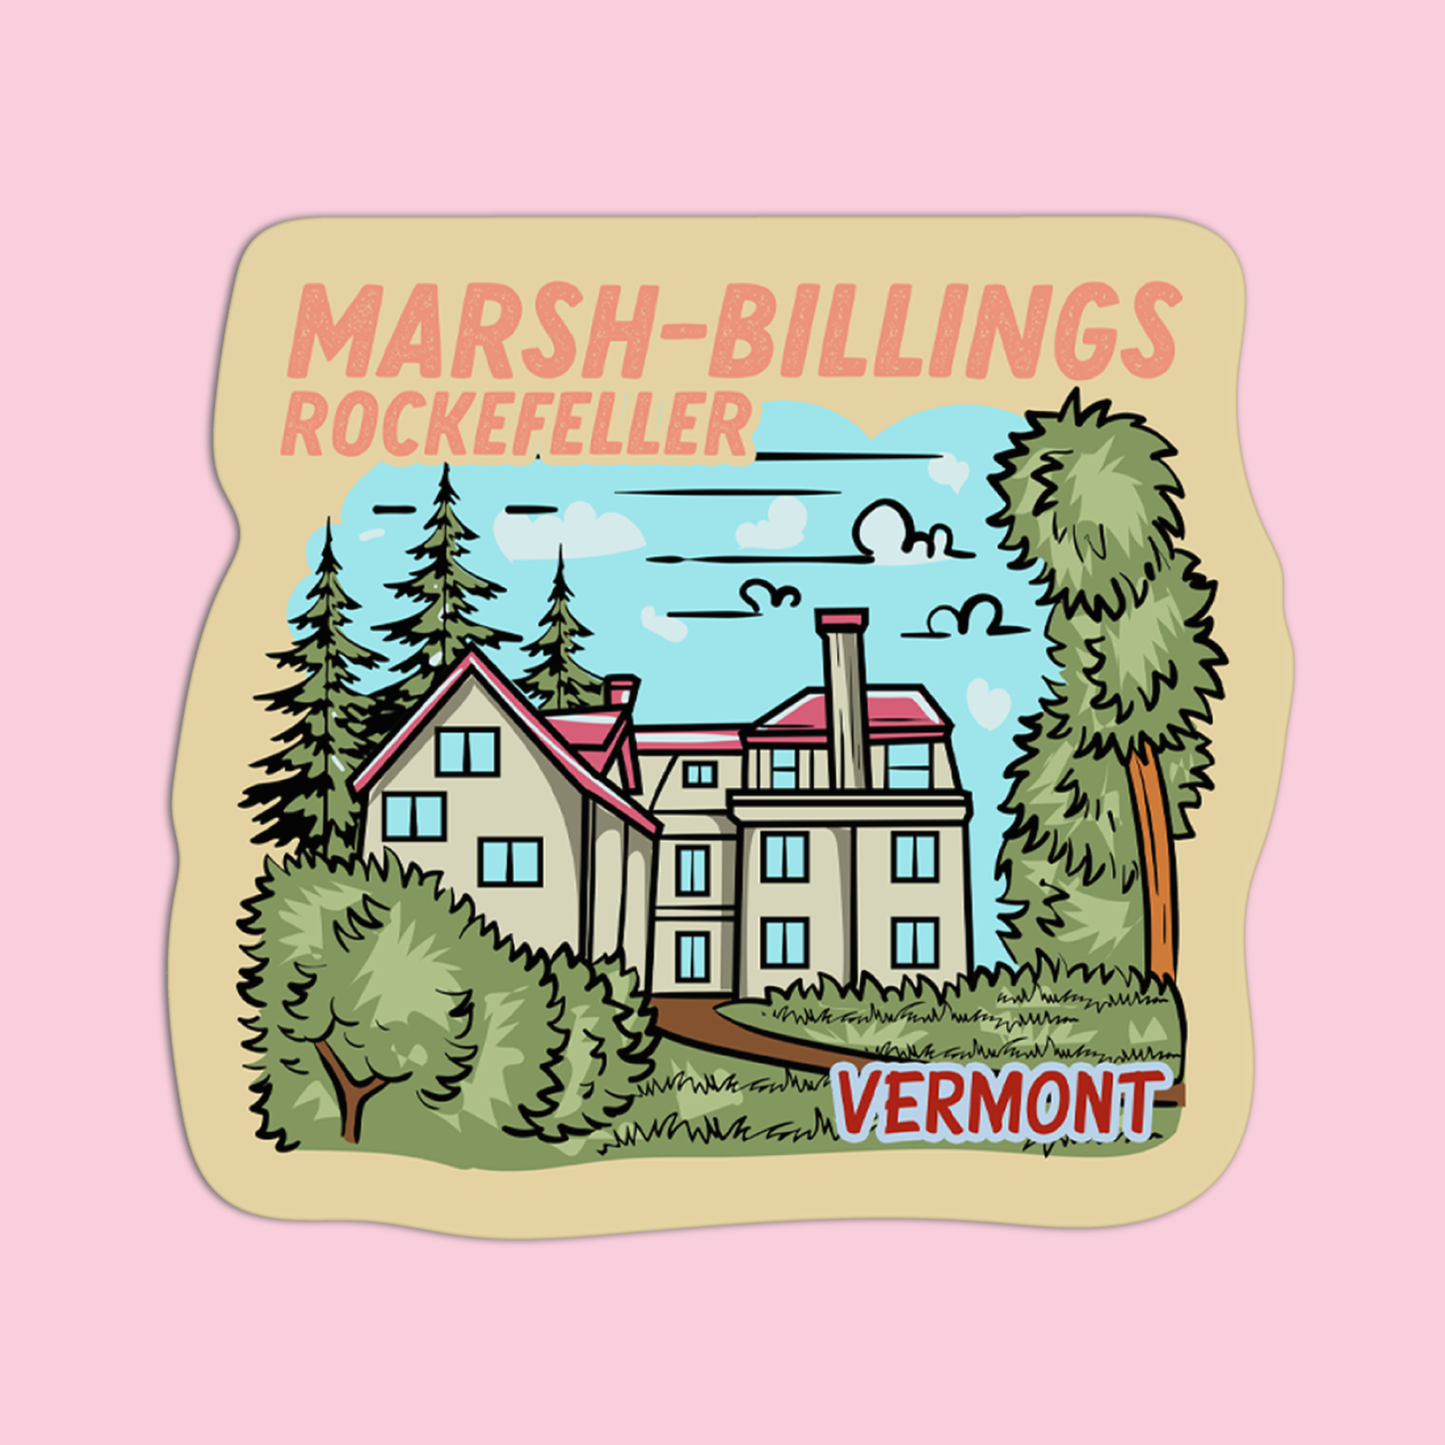 Vermont Marsh-Billings Rockefeller Sticker